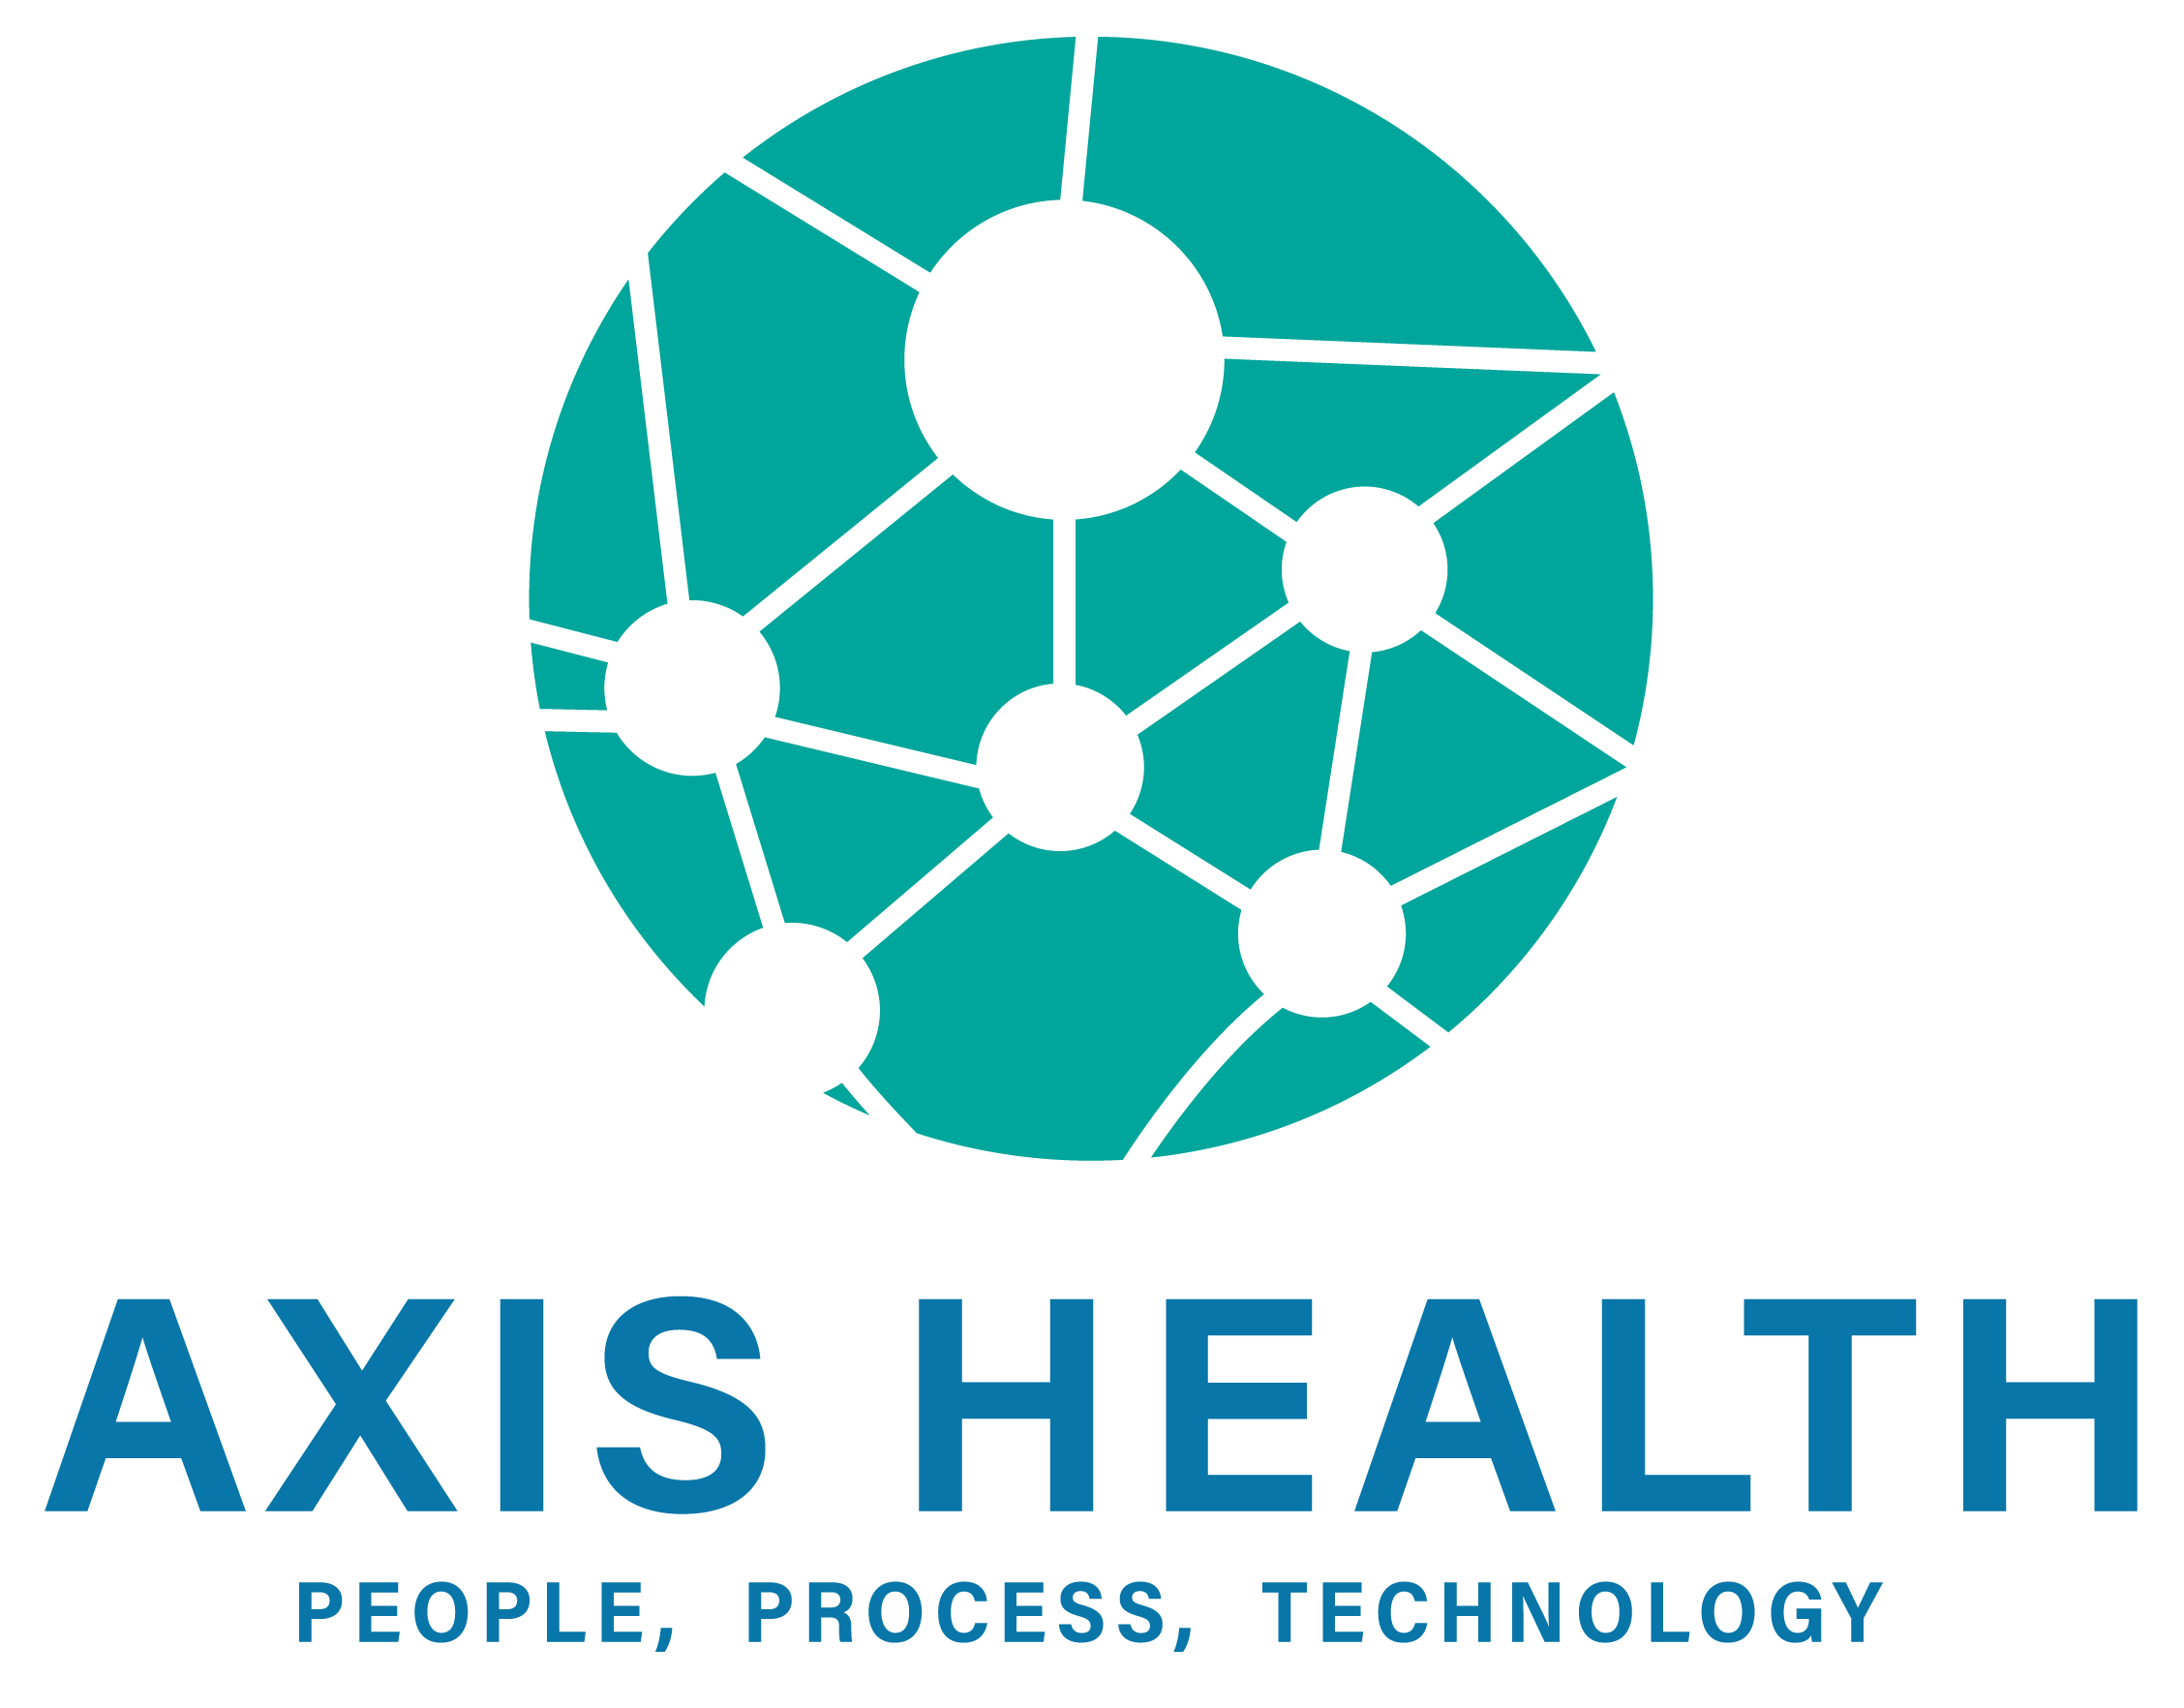 AXIS HEALTH